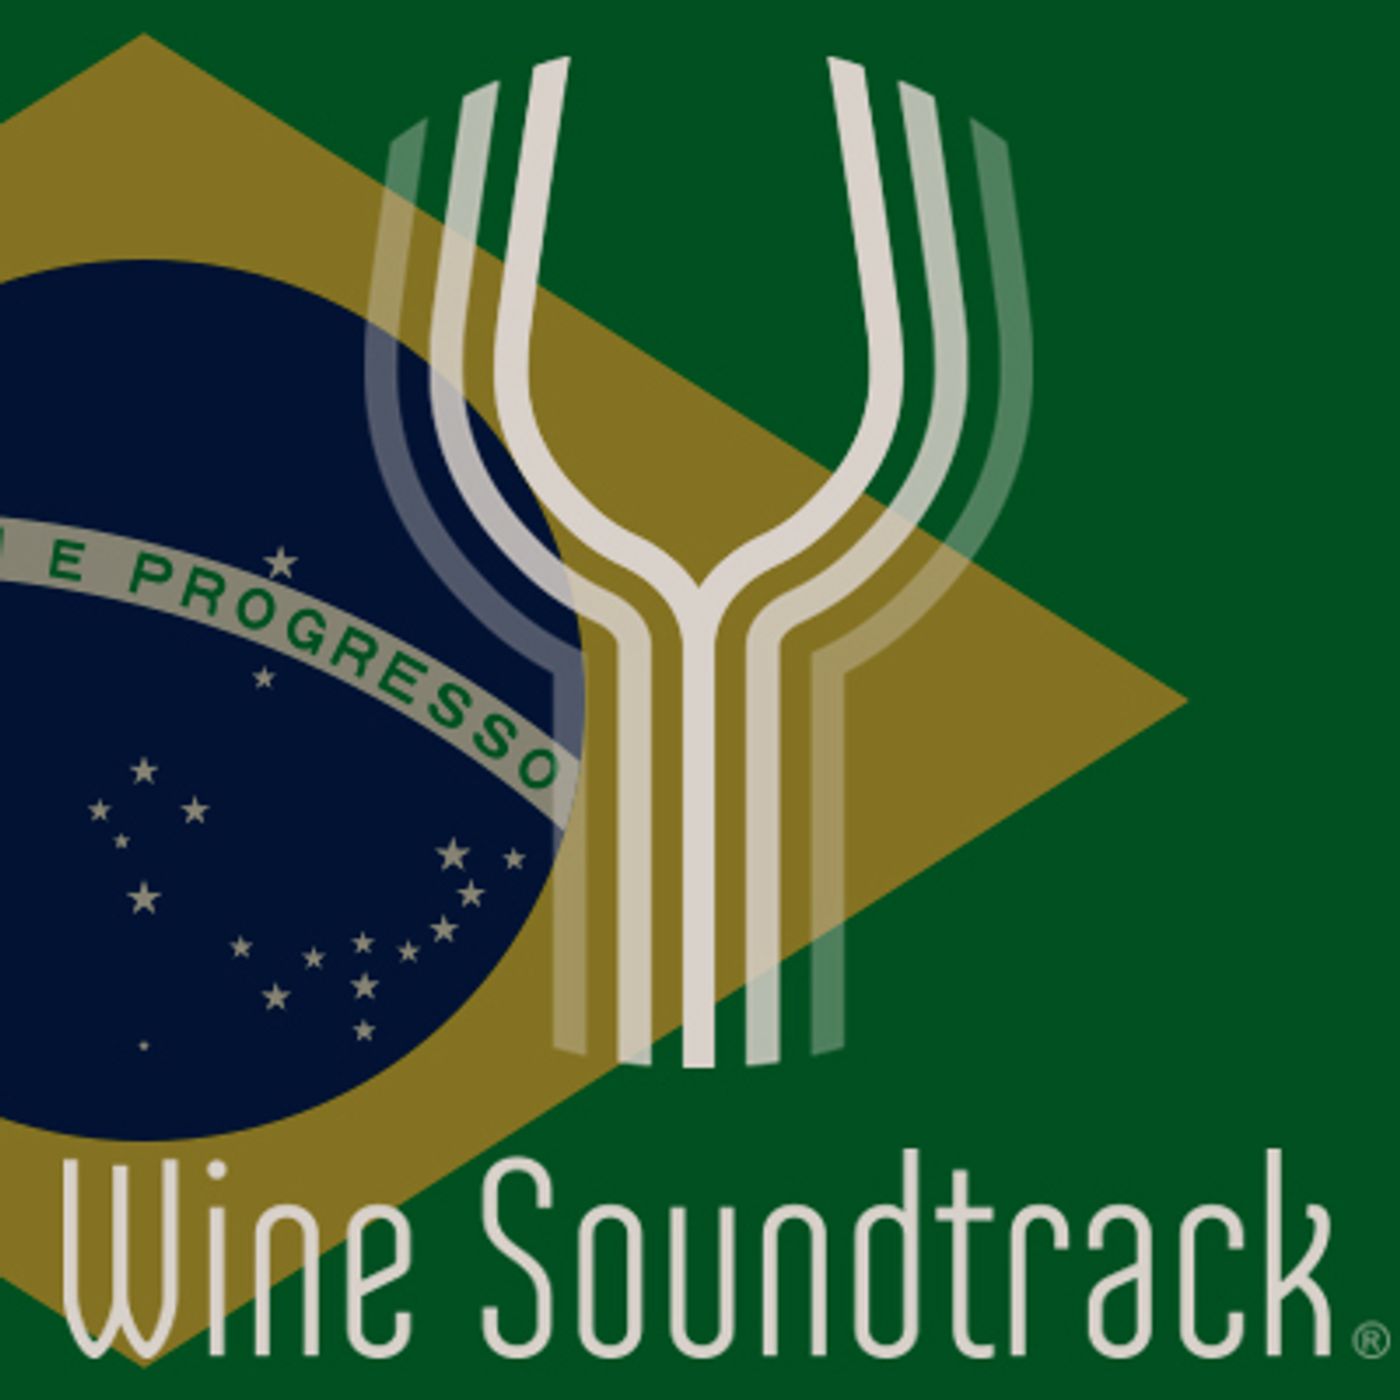 Wine Soundtrack Brazil